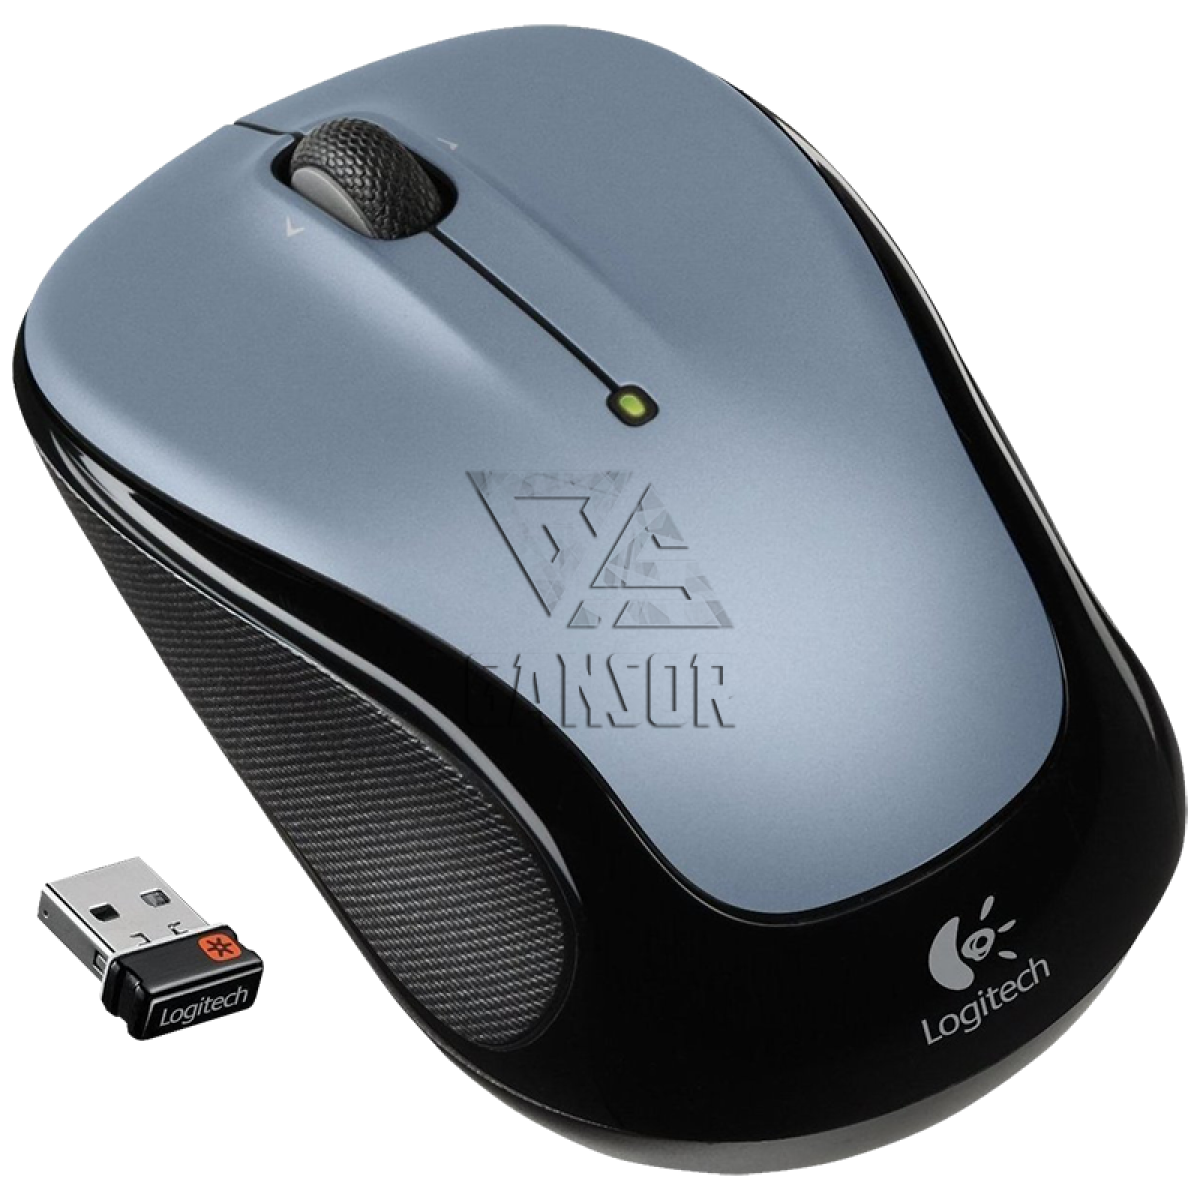 Беспроводные мыши спб. Logitech Wireless Mouse m325. Logitech беспроводная мышь ь325. Logitech m325 Limited. Мышь беспроводная Logitech m325 Dark Silver.